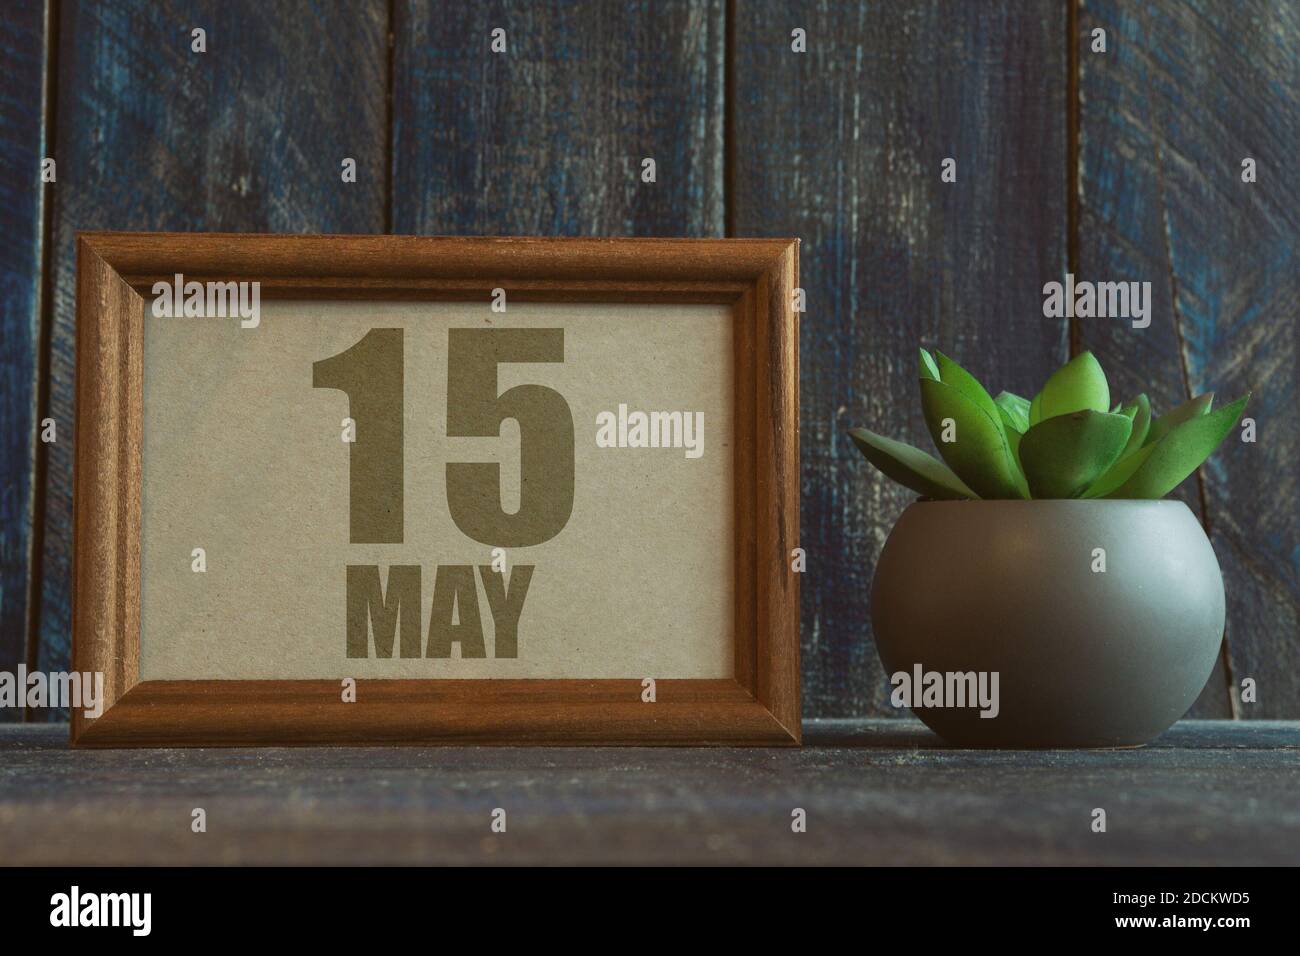 Mai 15th. Tag 15 des Monats, Datum im Rahmen neben Sukkulente auf hölzernen Hintergrund Frühlingsmonat, Tag des Jahres Konzept Stockfoto